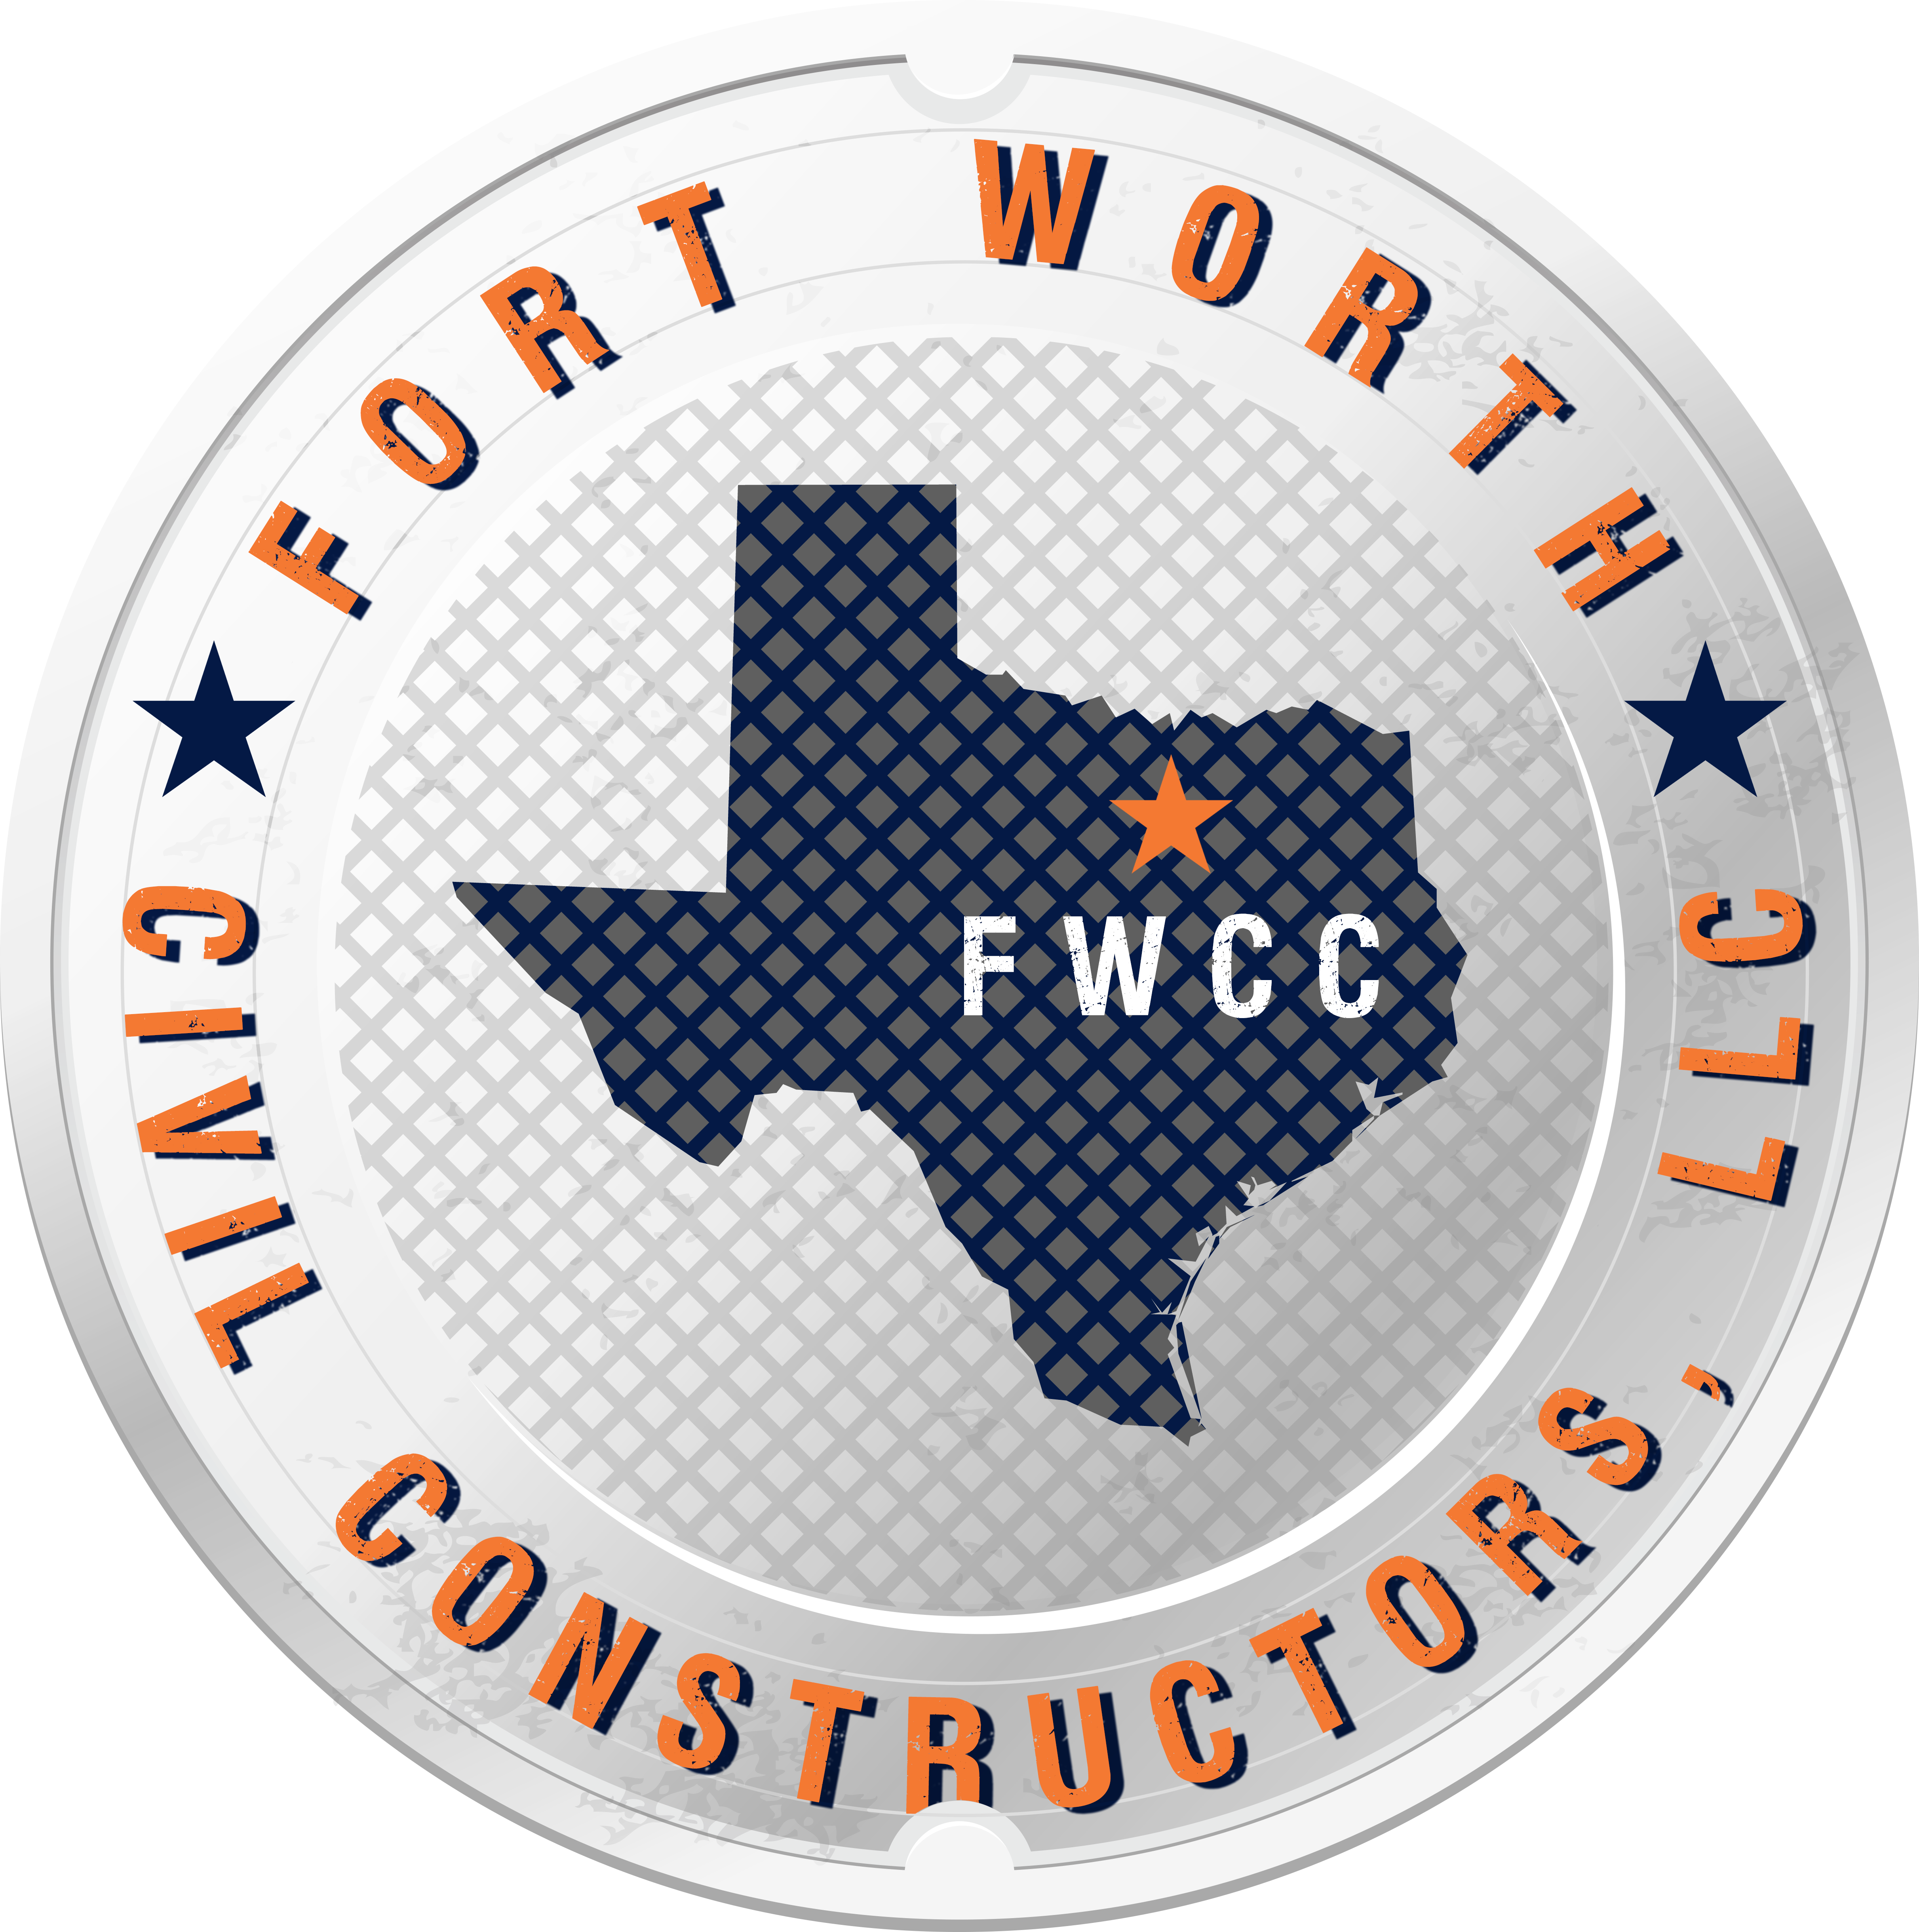 Fort Worth Civil Constructors